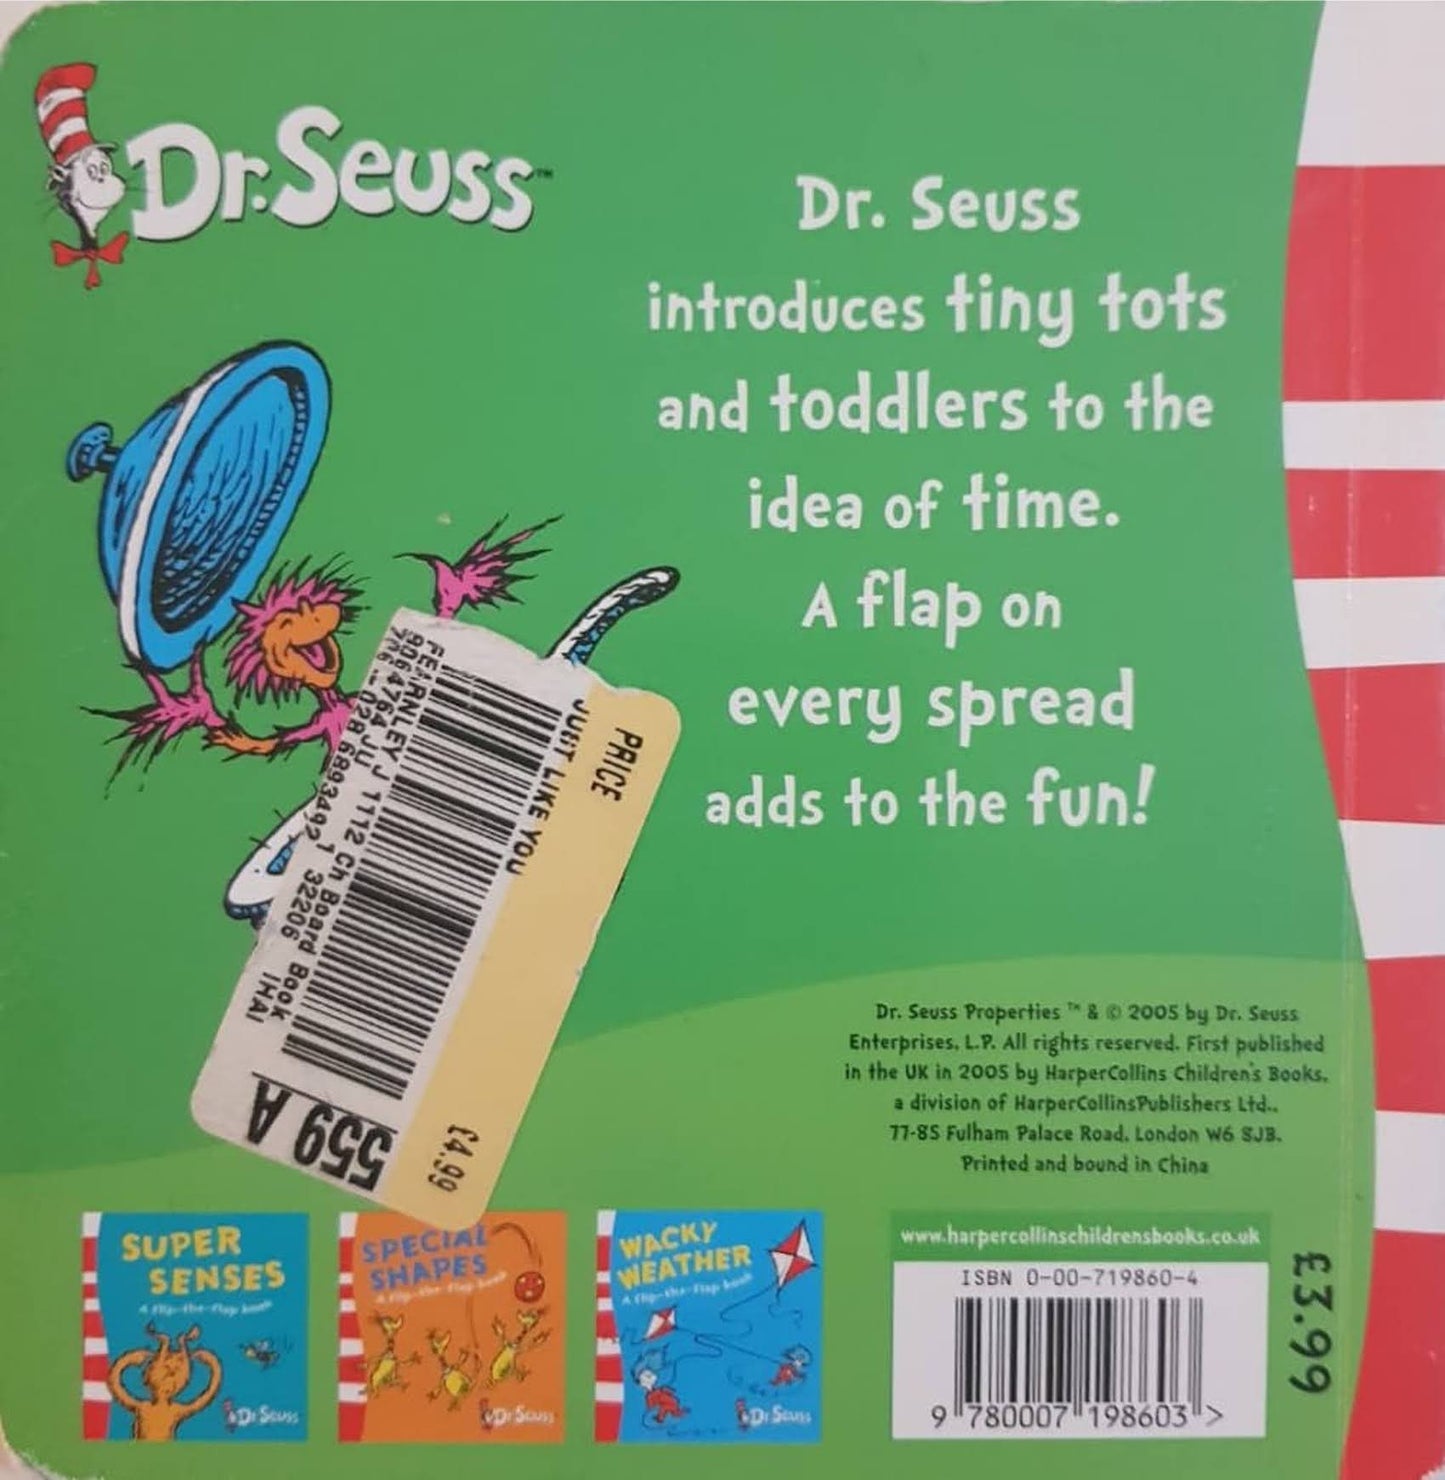 DIZZY DAYS - A flip-the-flap book Very Good Dr. Seuss  (6228979187897)